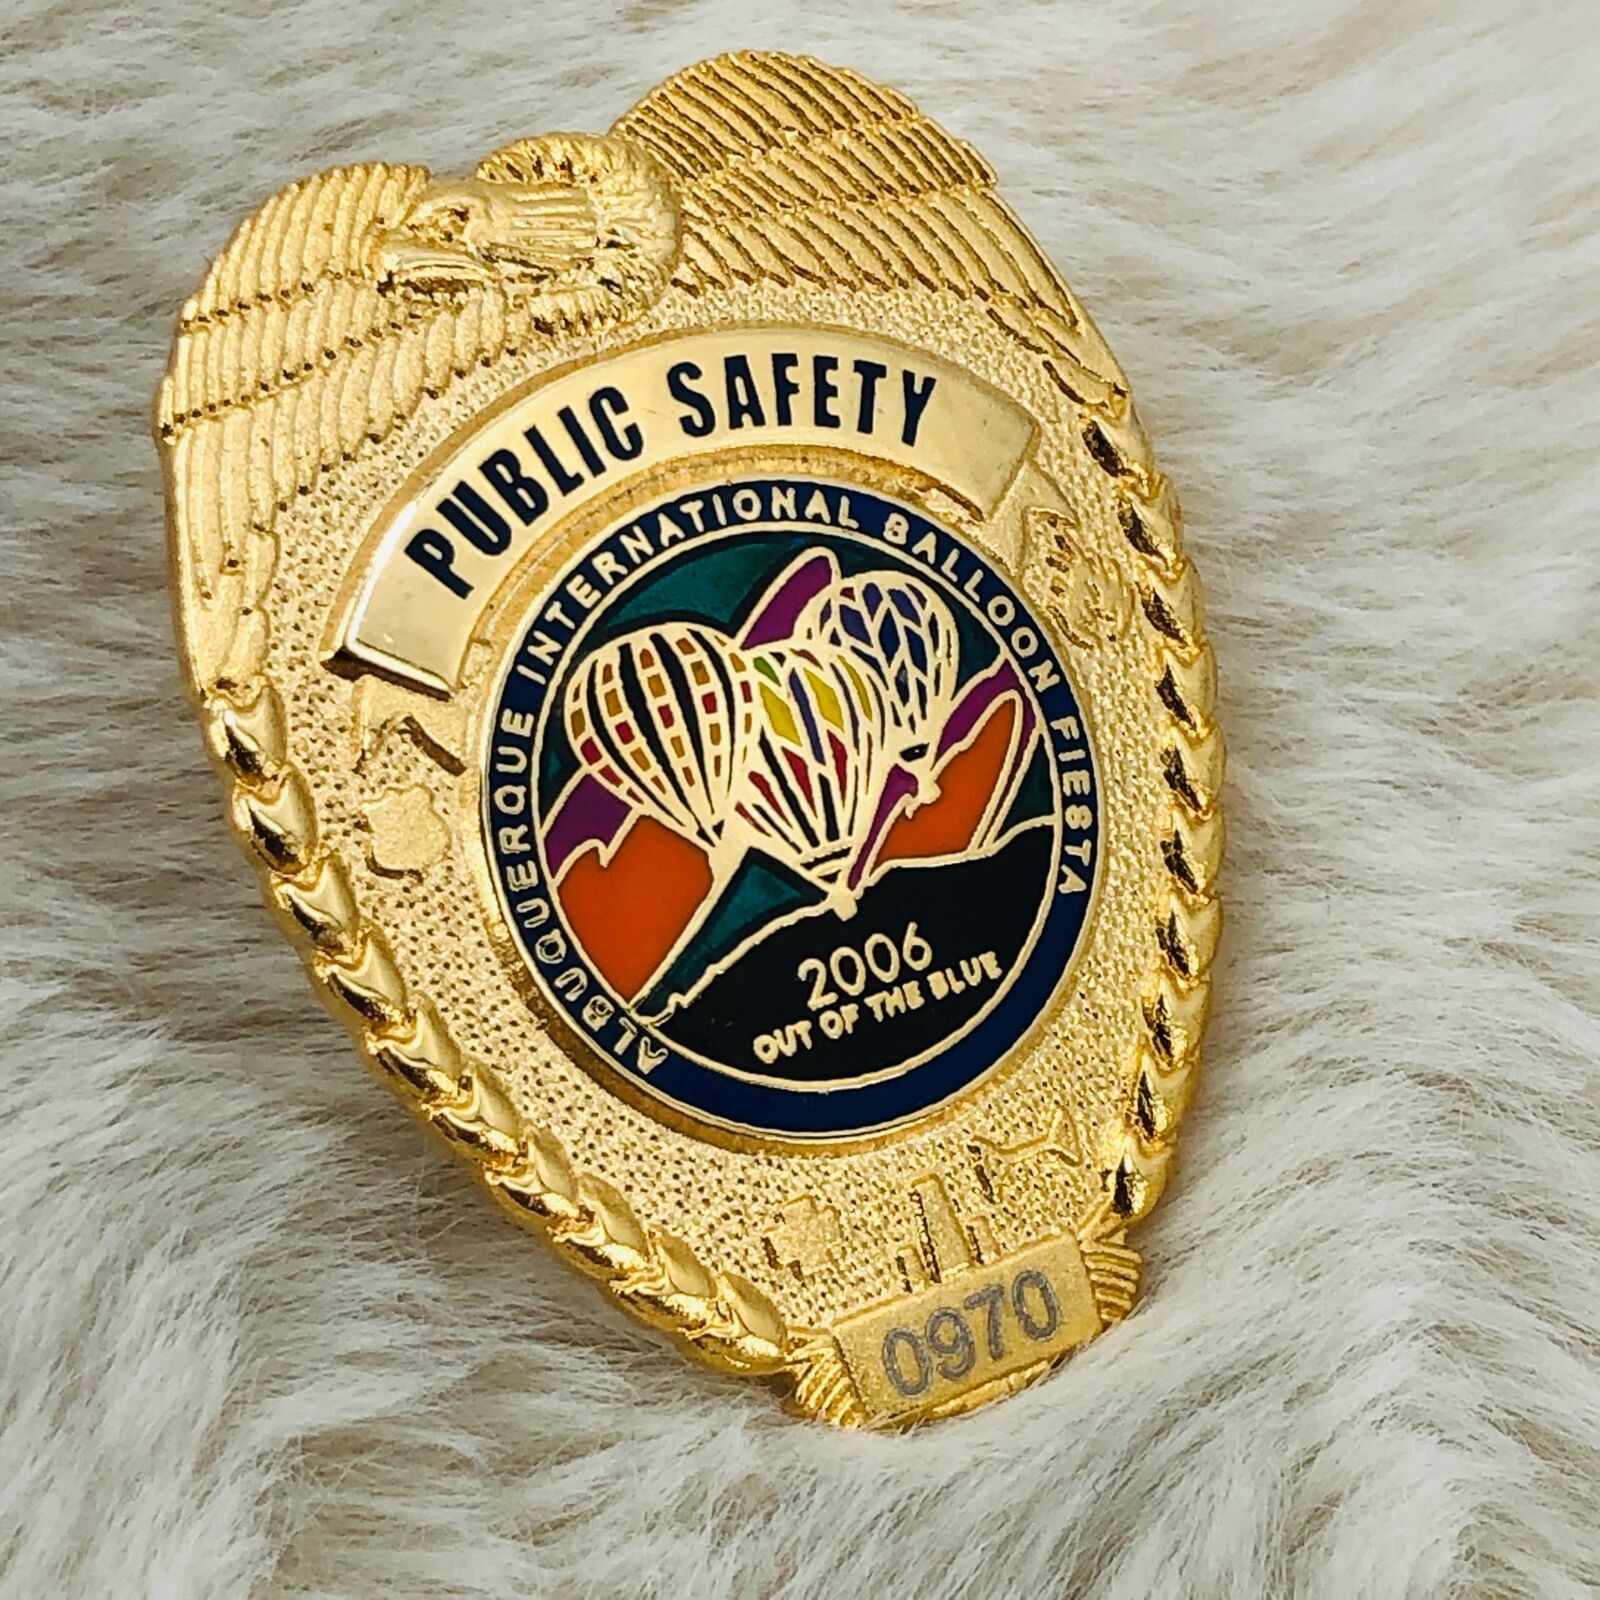 2006 Albuquerque Hot Air Balloon Fiesta Public Safety Badge Pin LE #970